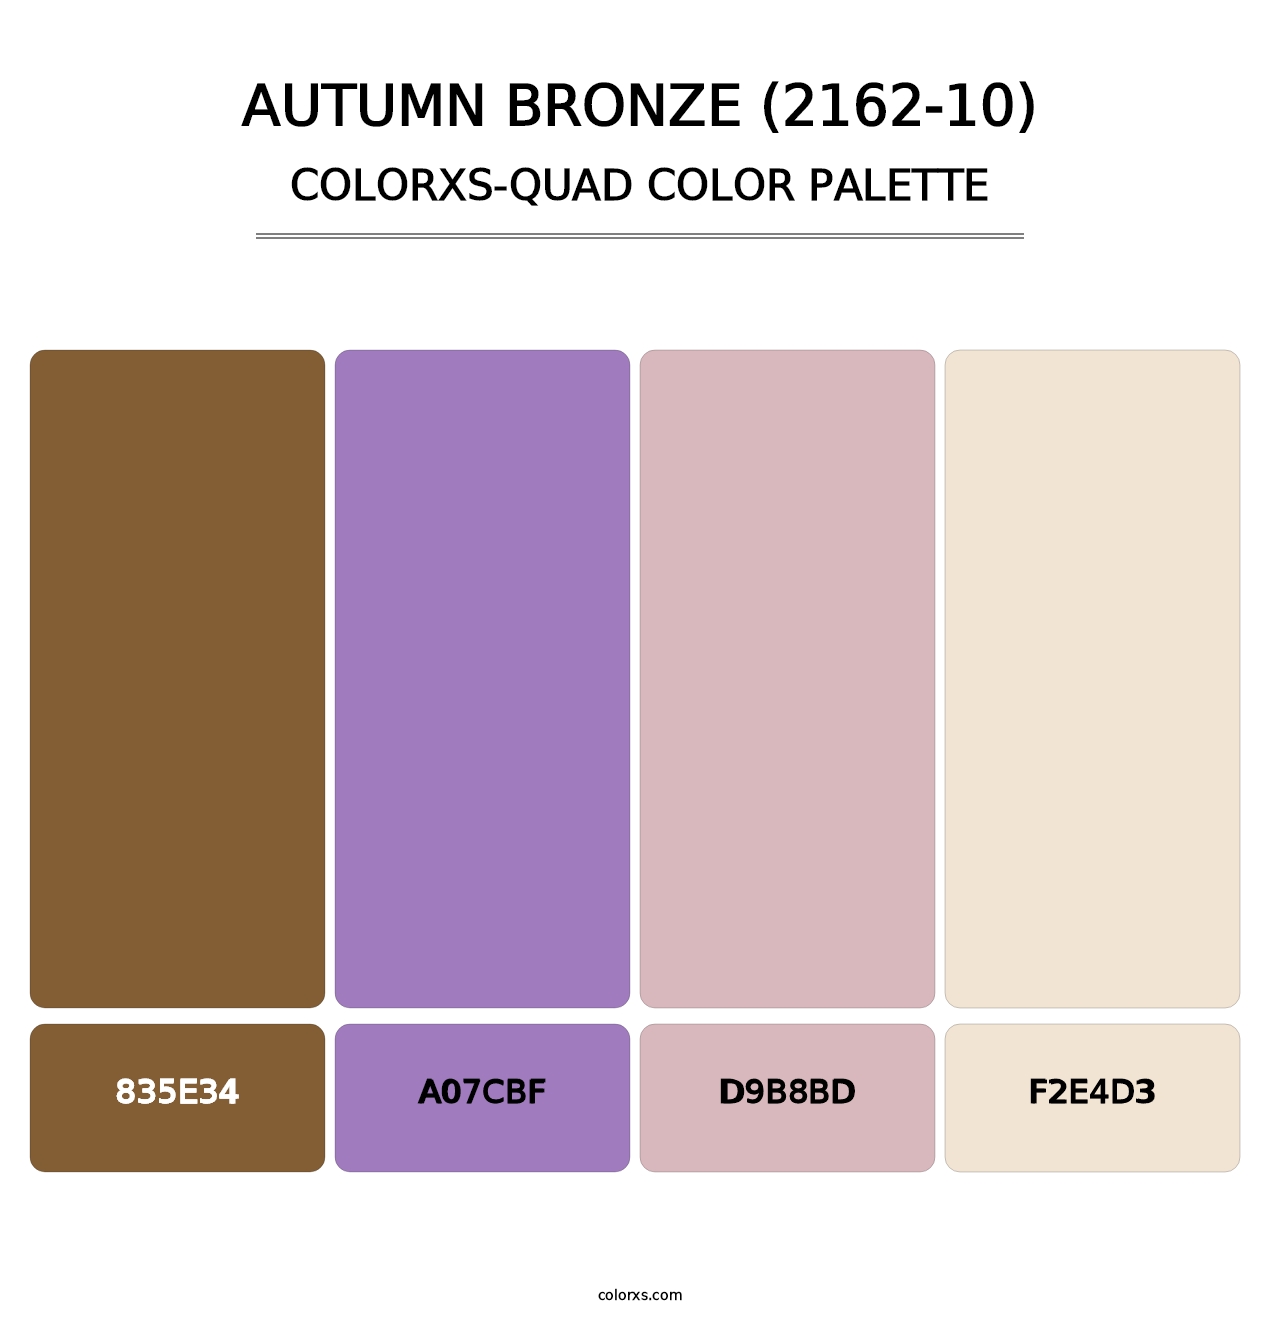 Autumn Bronze (2162-10) - Colorxs Quad Palette